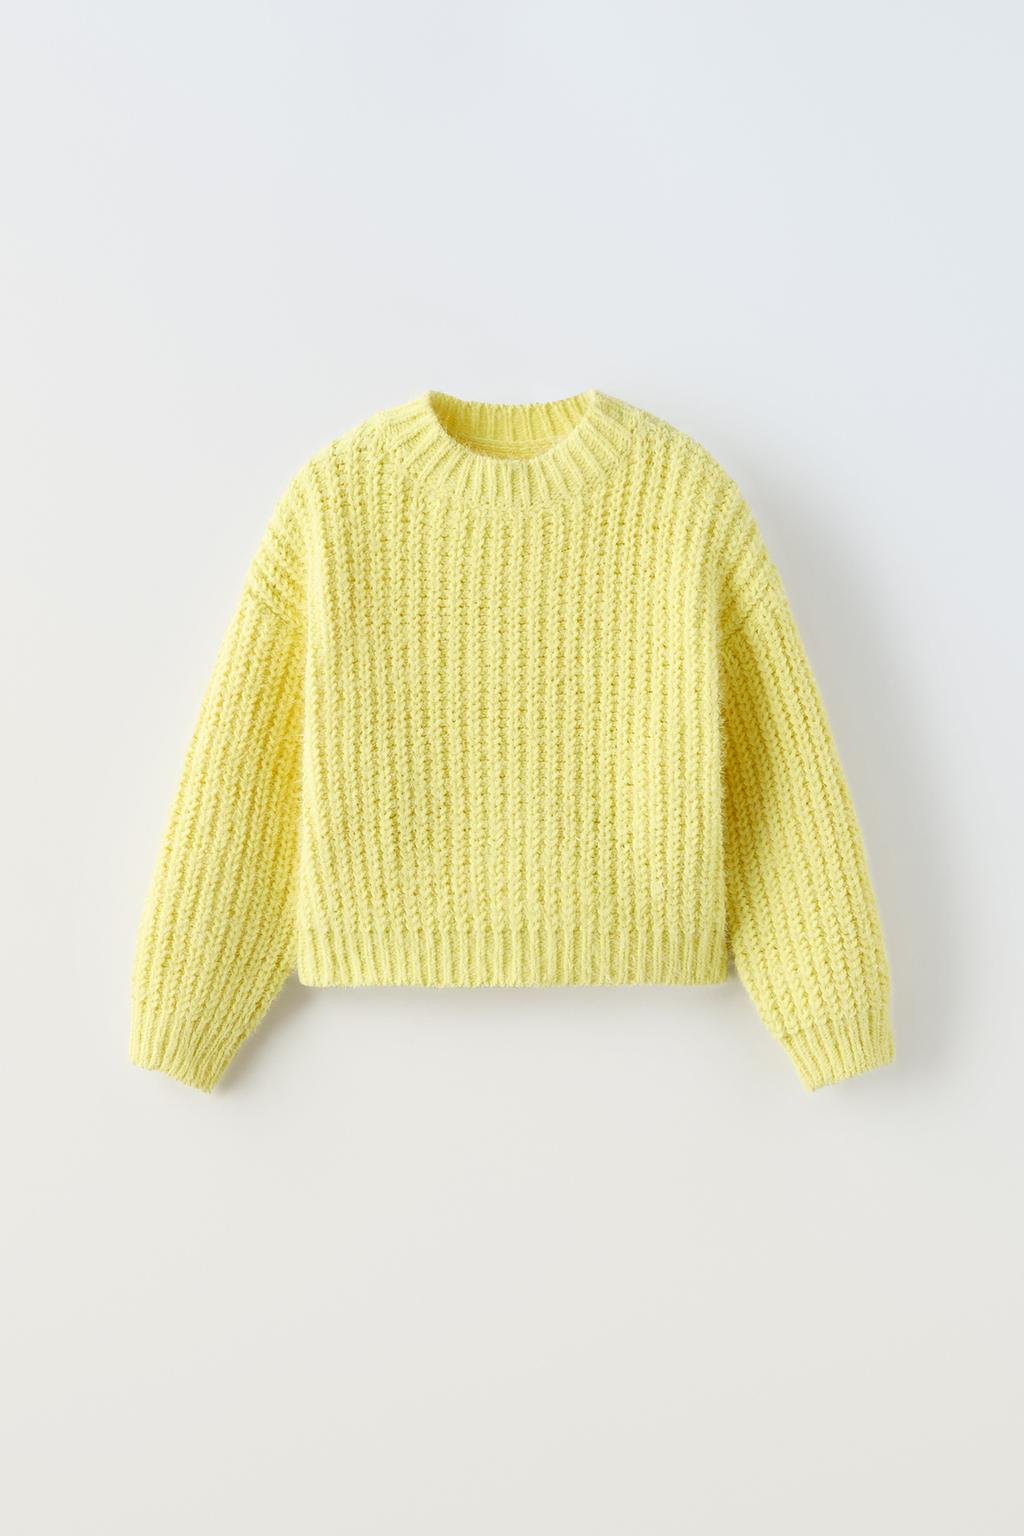 Трикотажный свитер ZARA, желтый вязаный свитер с круглым вырезом женский свитер с длинными рукавами тонкий свободный вязаный универсальный топ женская одежда